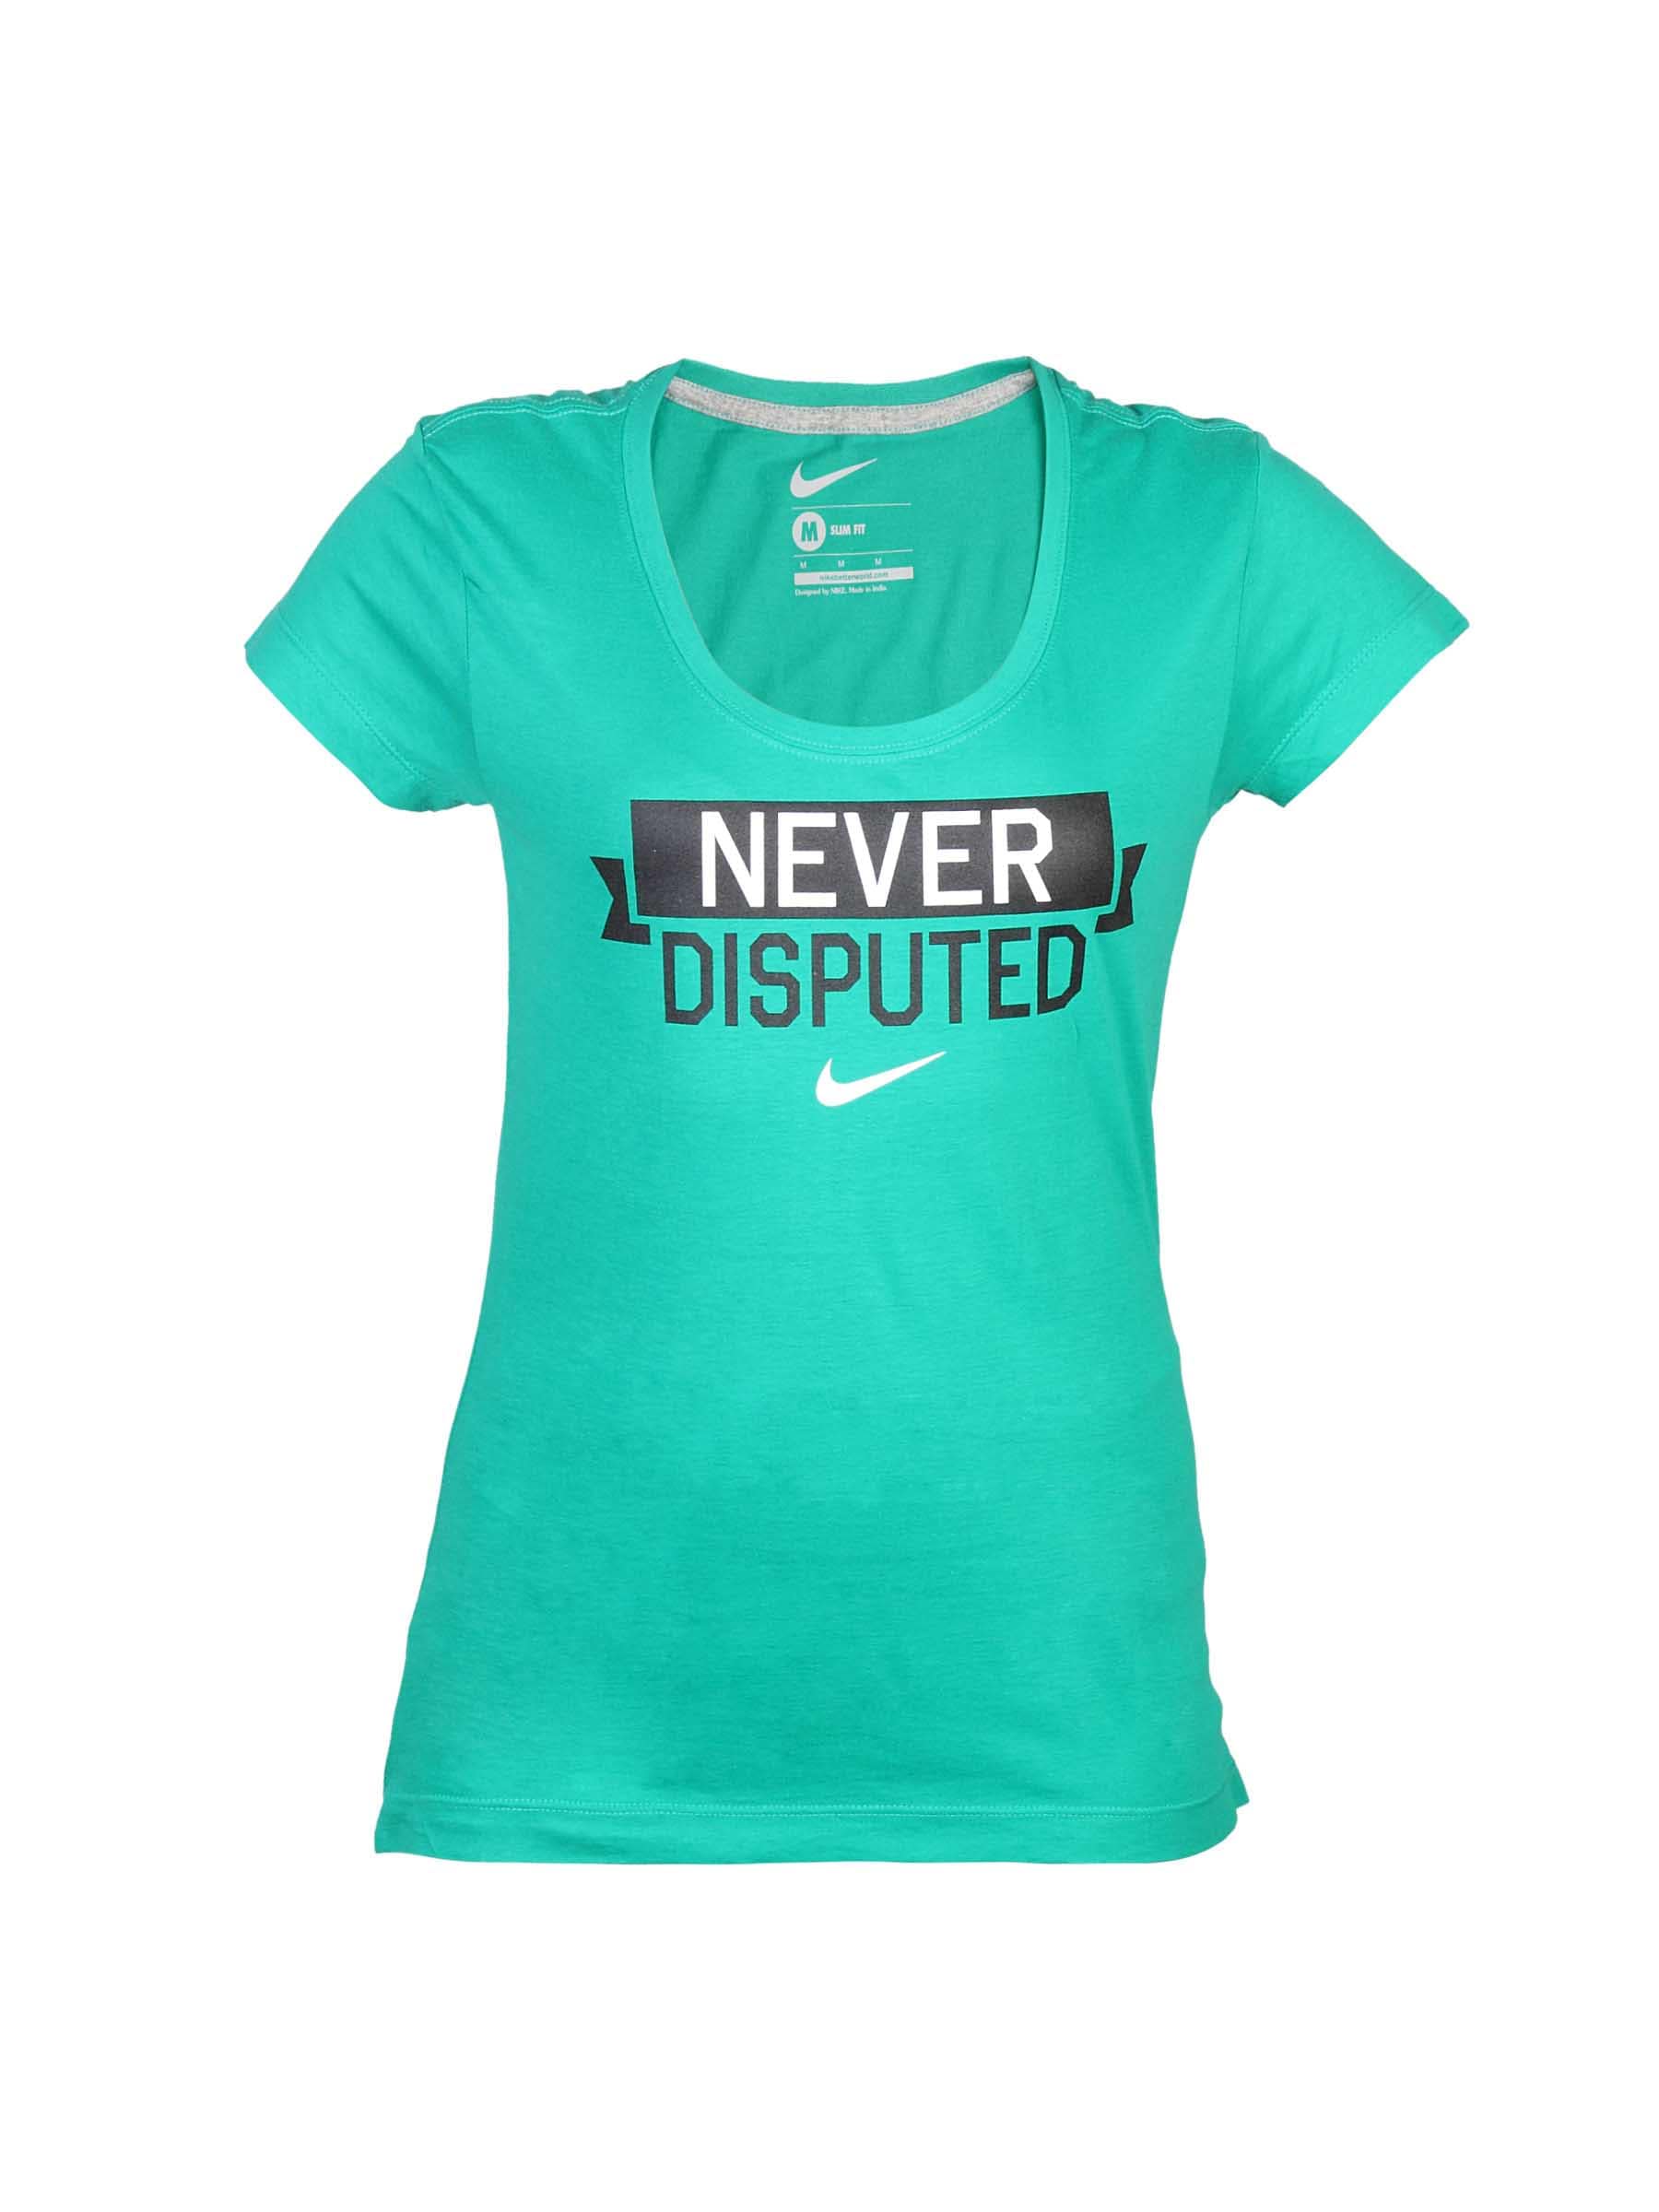 Nike Women Printed Green T-shirt